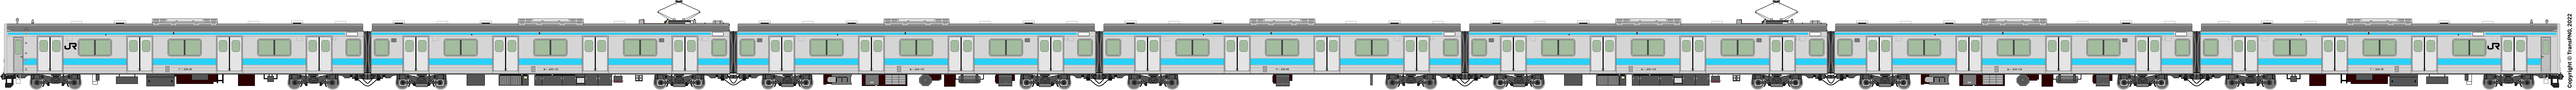 5086 - [5086] West Japan Railway 52284557500_c3c1a6f55e_o